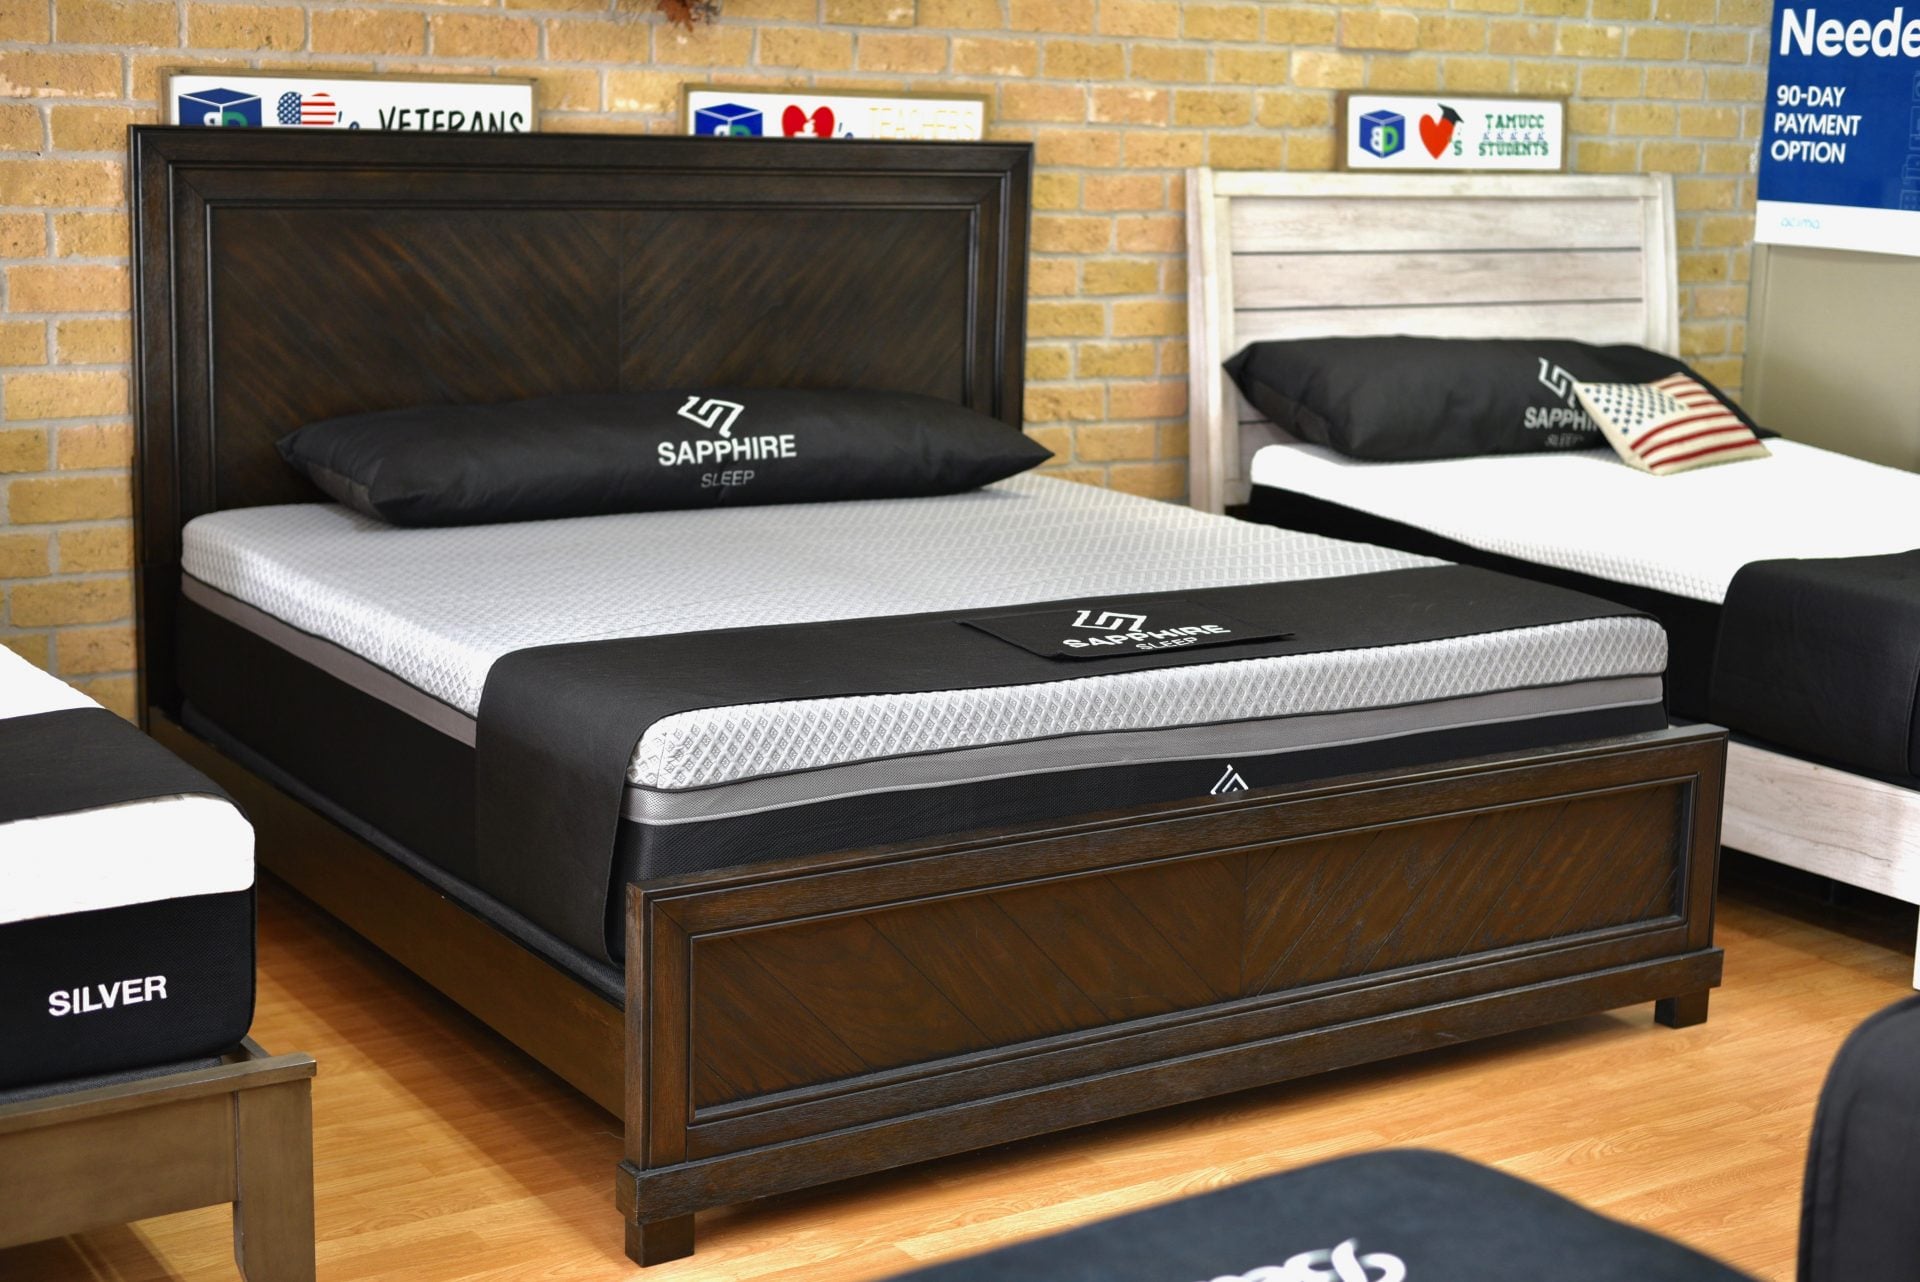 boxdrop mattress furniture direct reviews